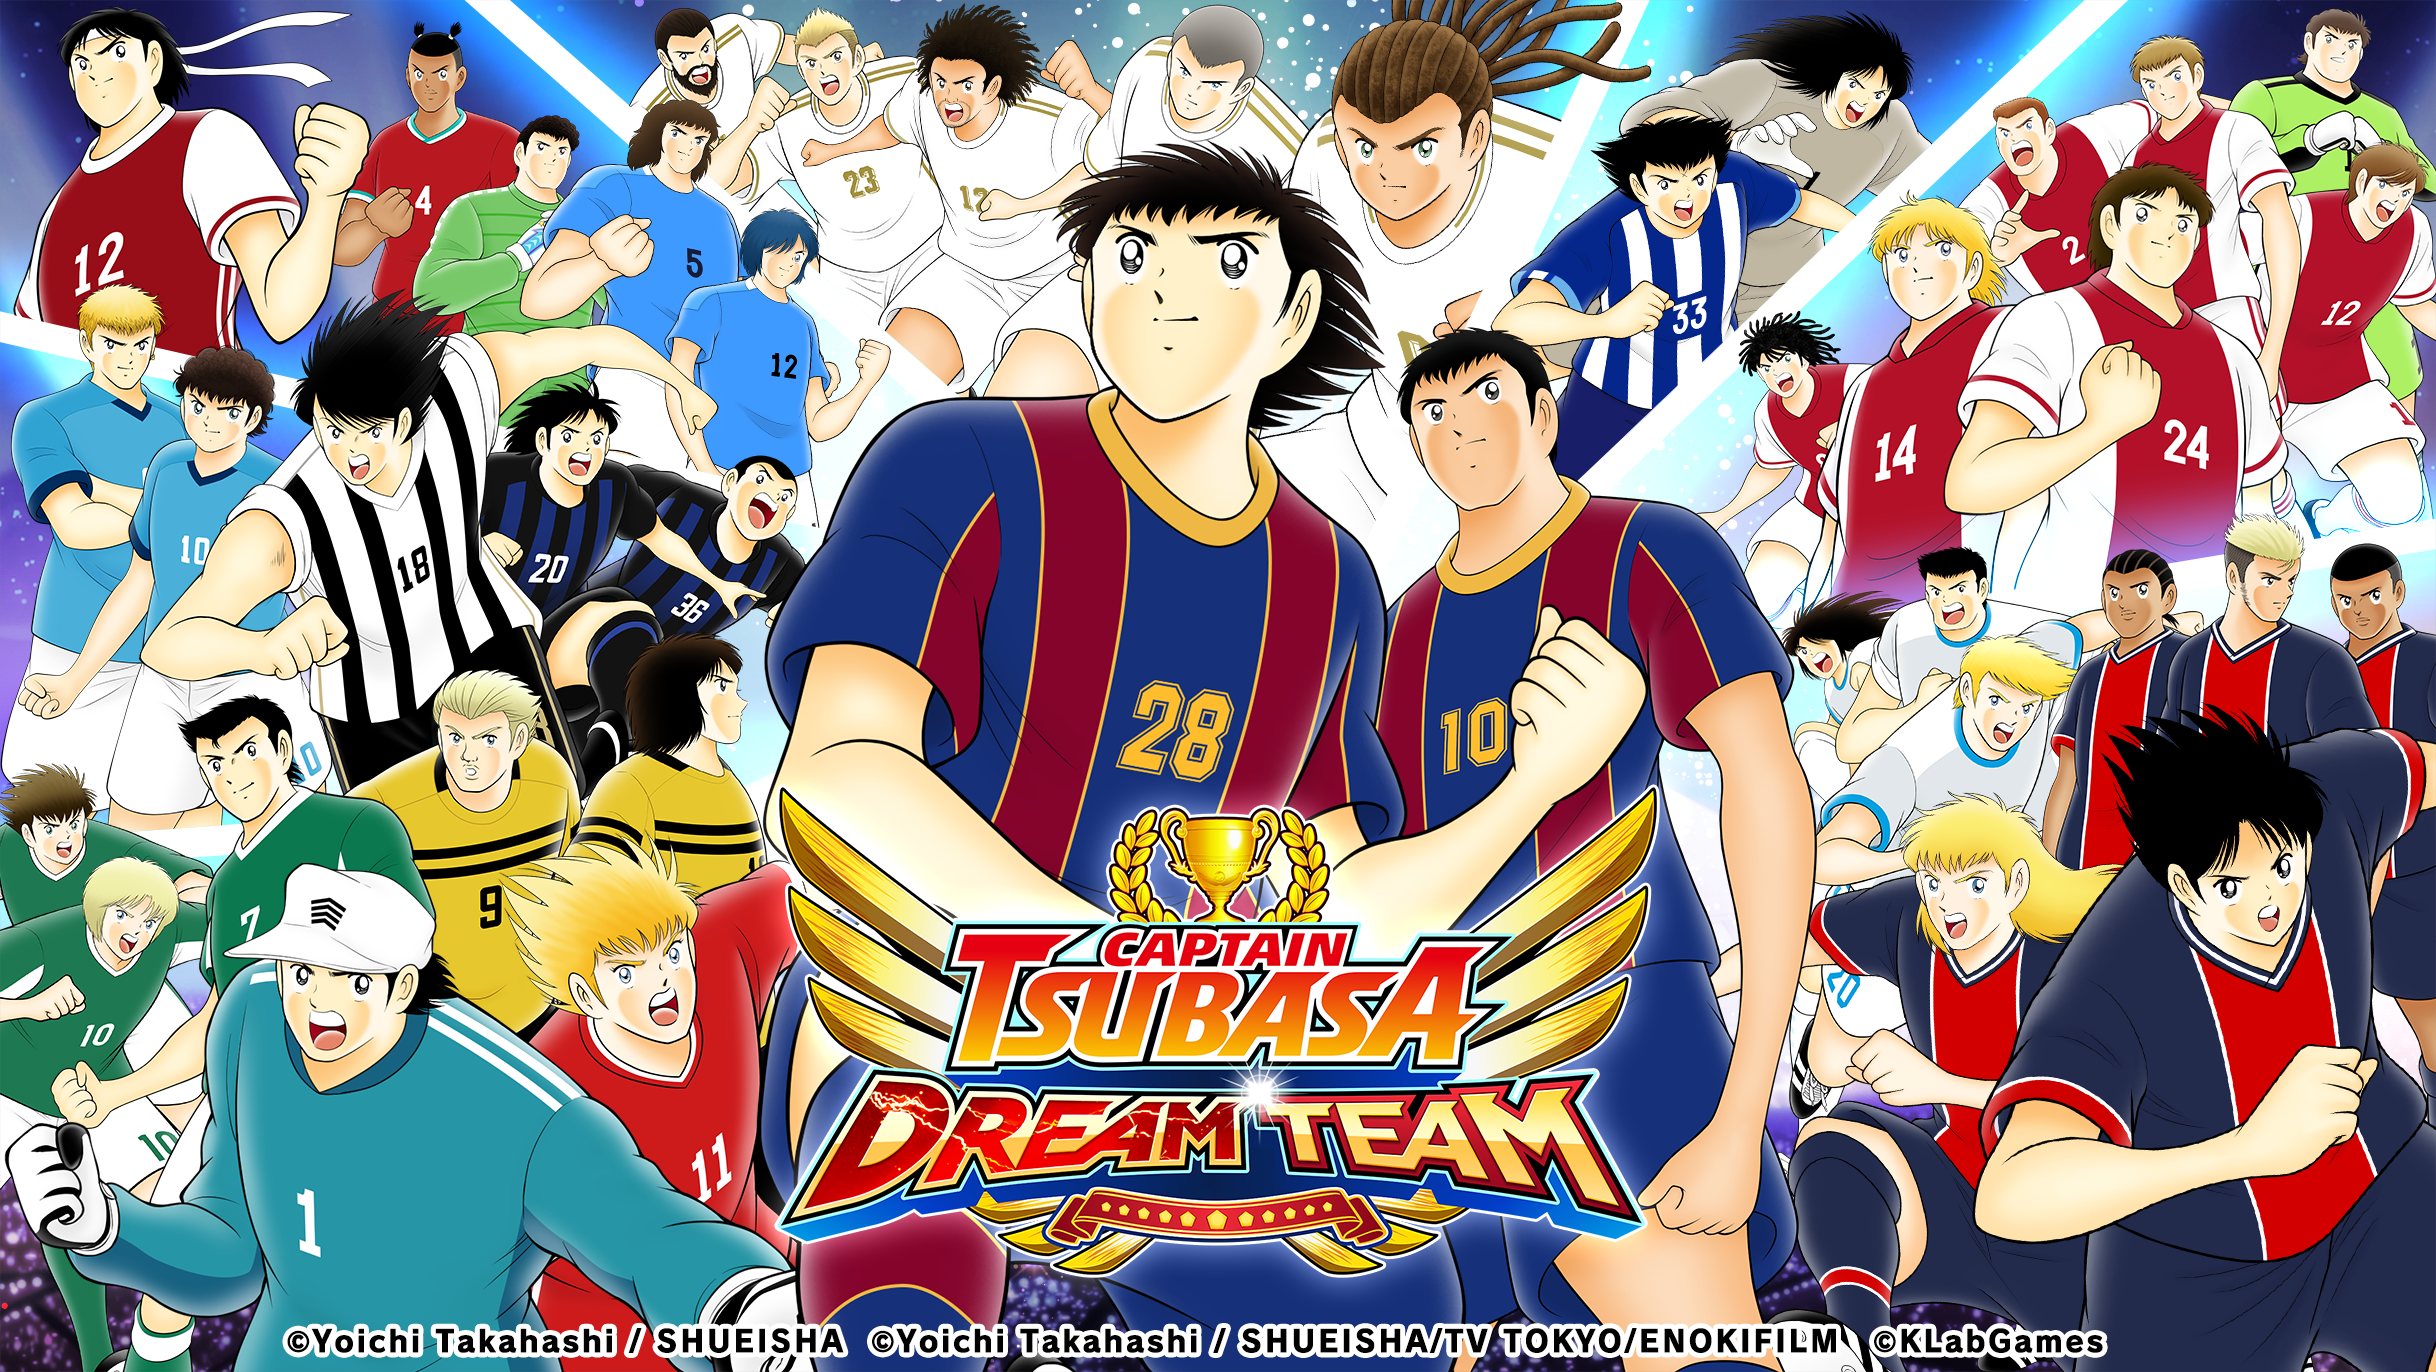 เกม “กัปตันซึบาสะ: ดรีมทีม (Captain Tsubasa: Dream Team)” เปิดตัวเนื้อเรื่องใหม่ใน NEXT DREAM จากผลงานต้นฉบับของอาจารย์ทาคาฮาชิ โยอิจิ!